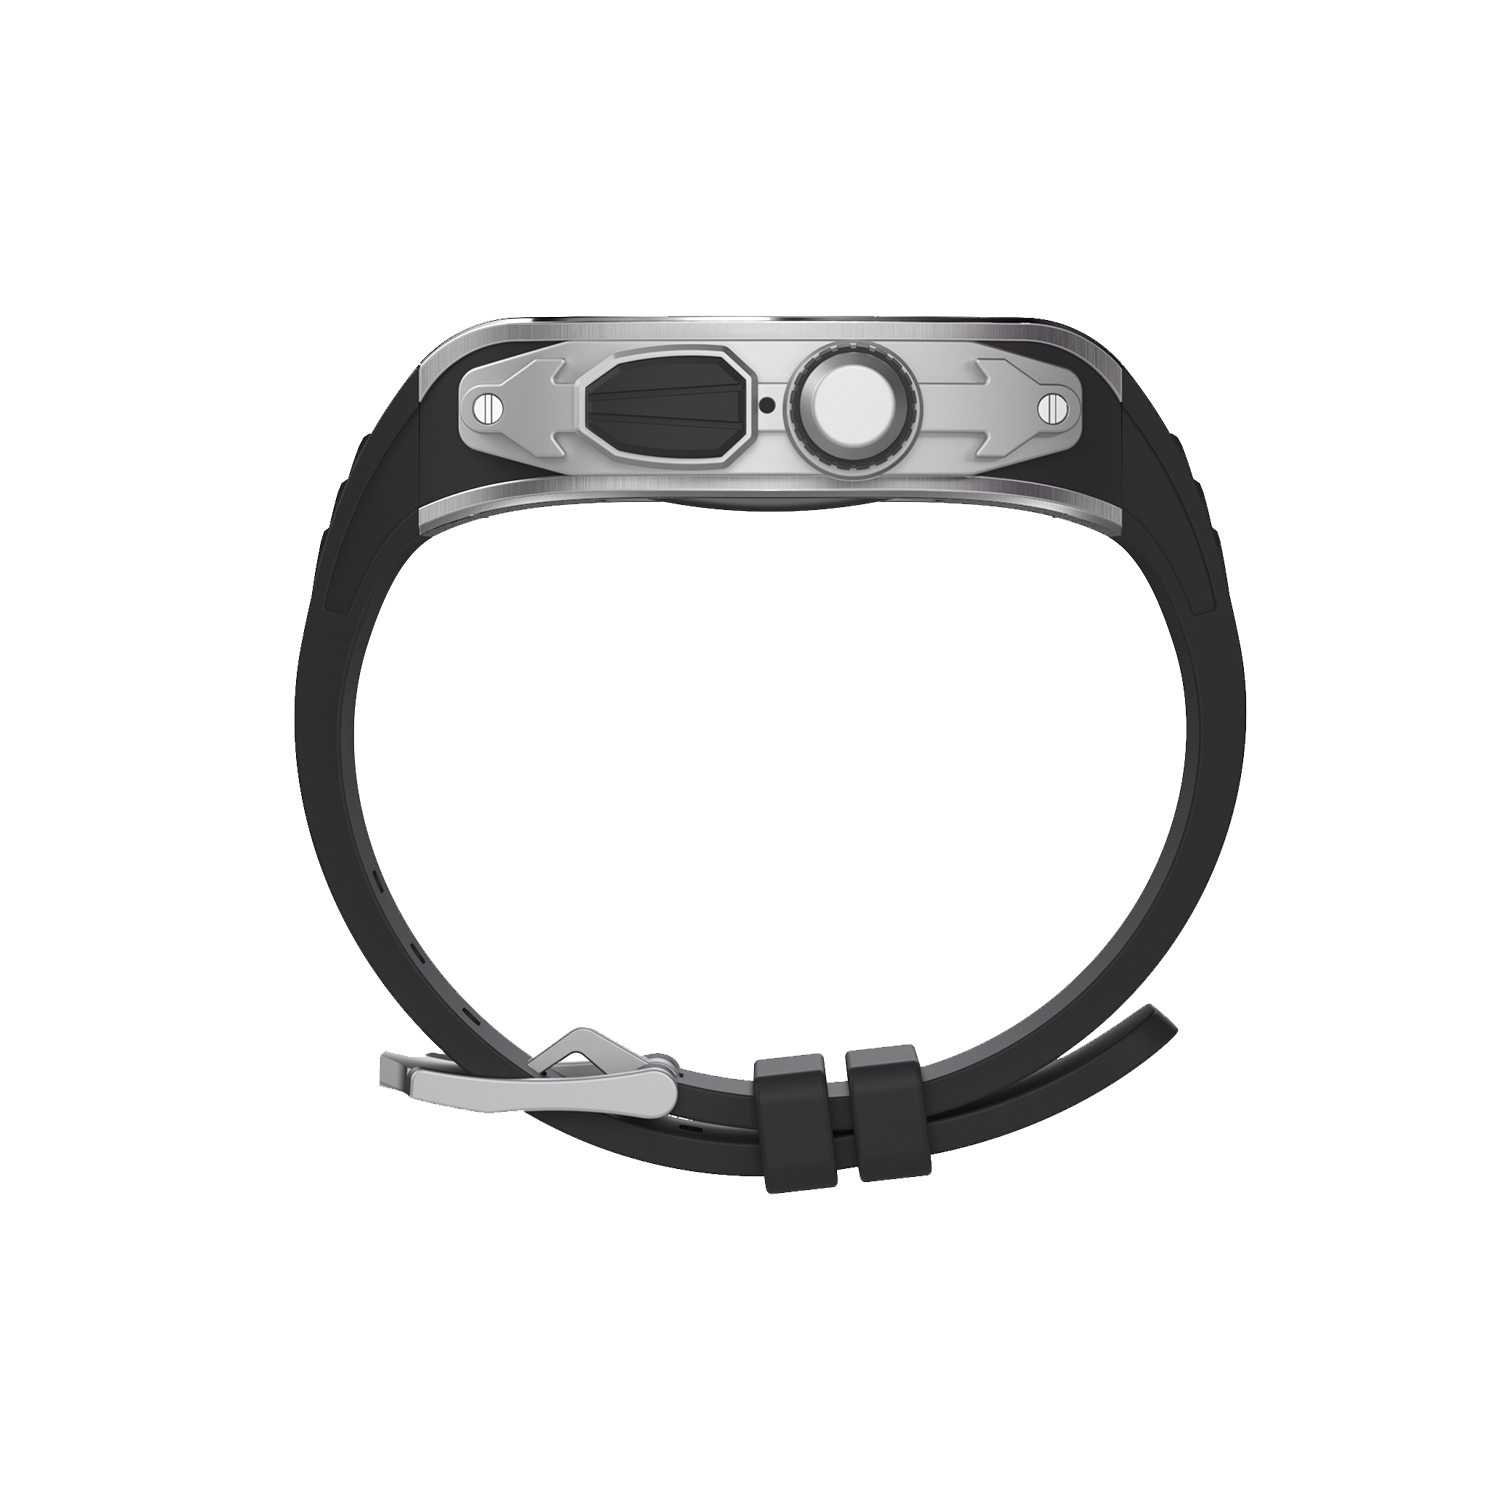 Apple Watch 錶殼摩納哥超銀色 - 橡膠